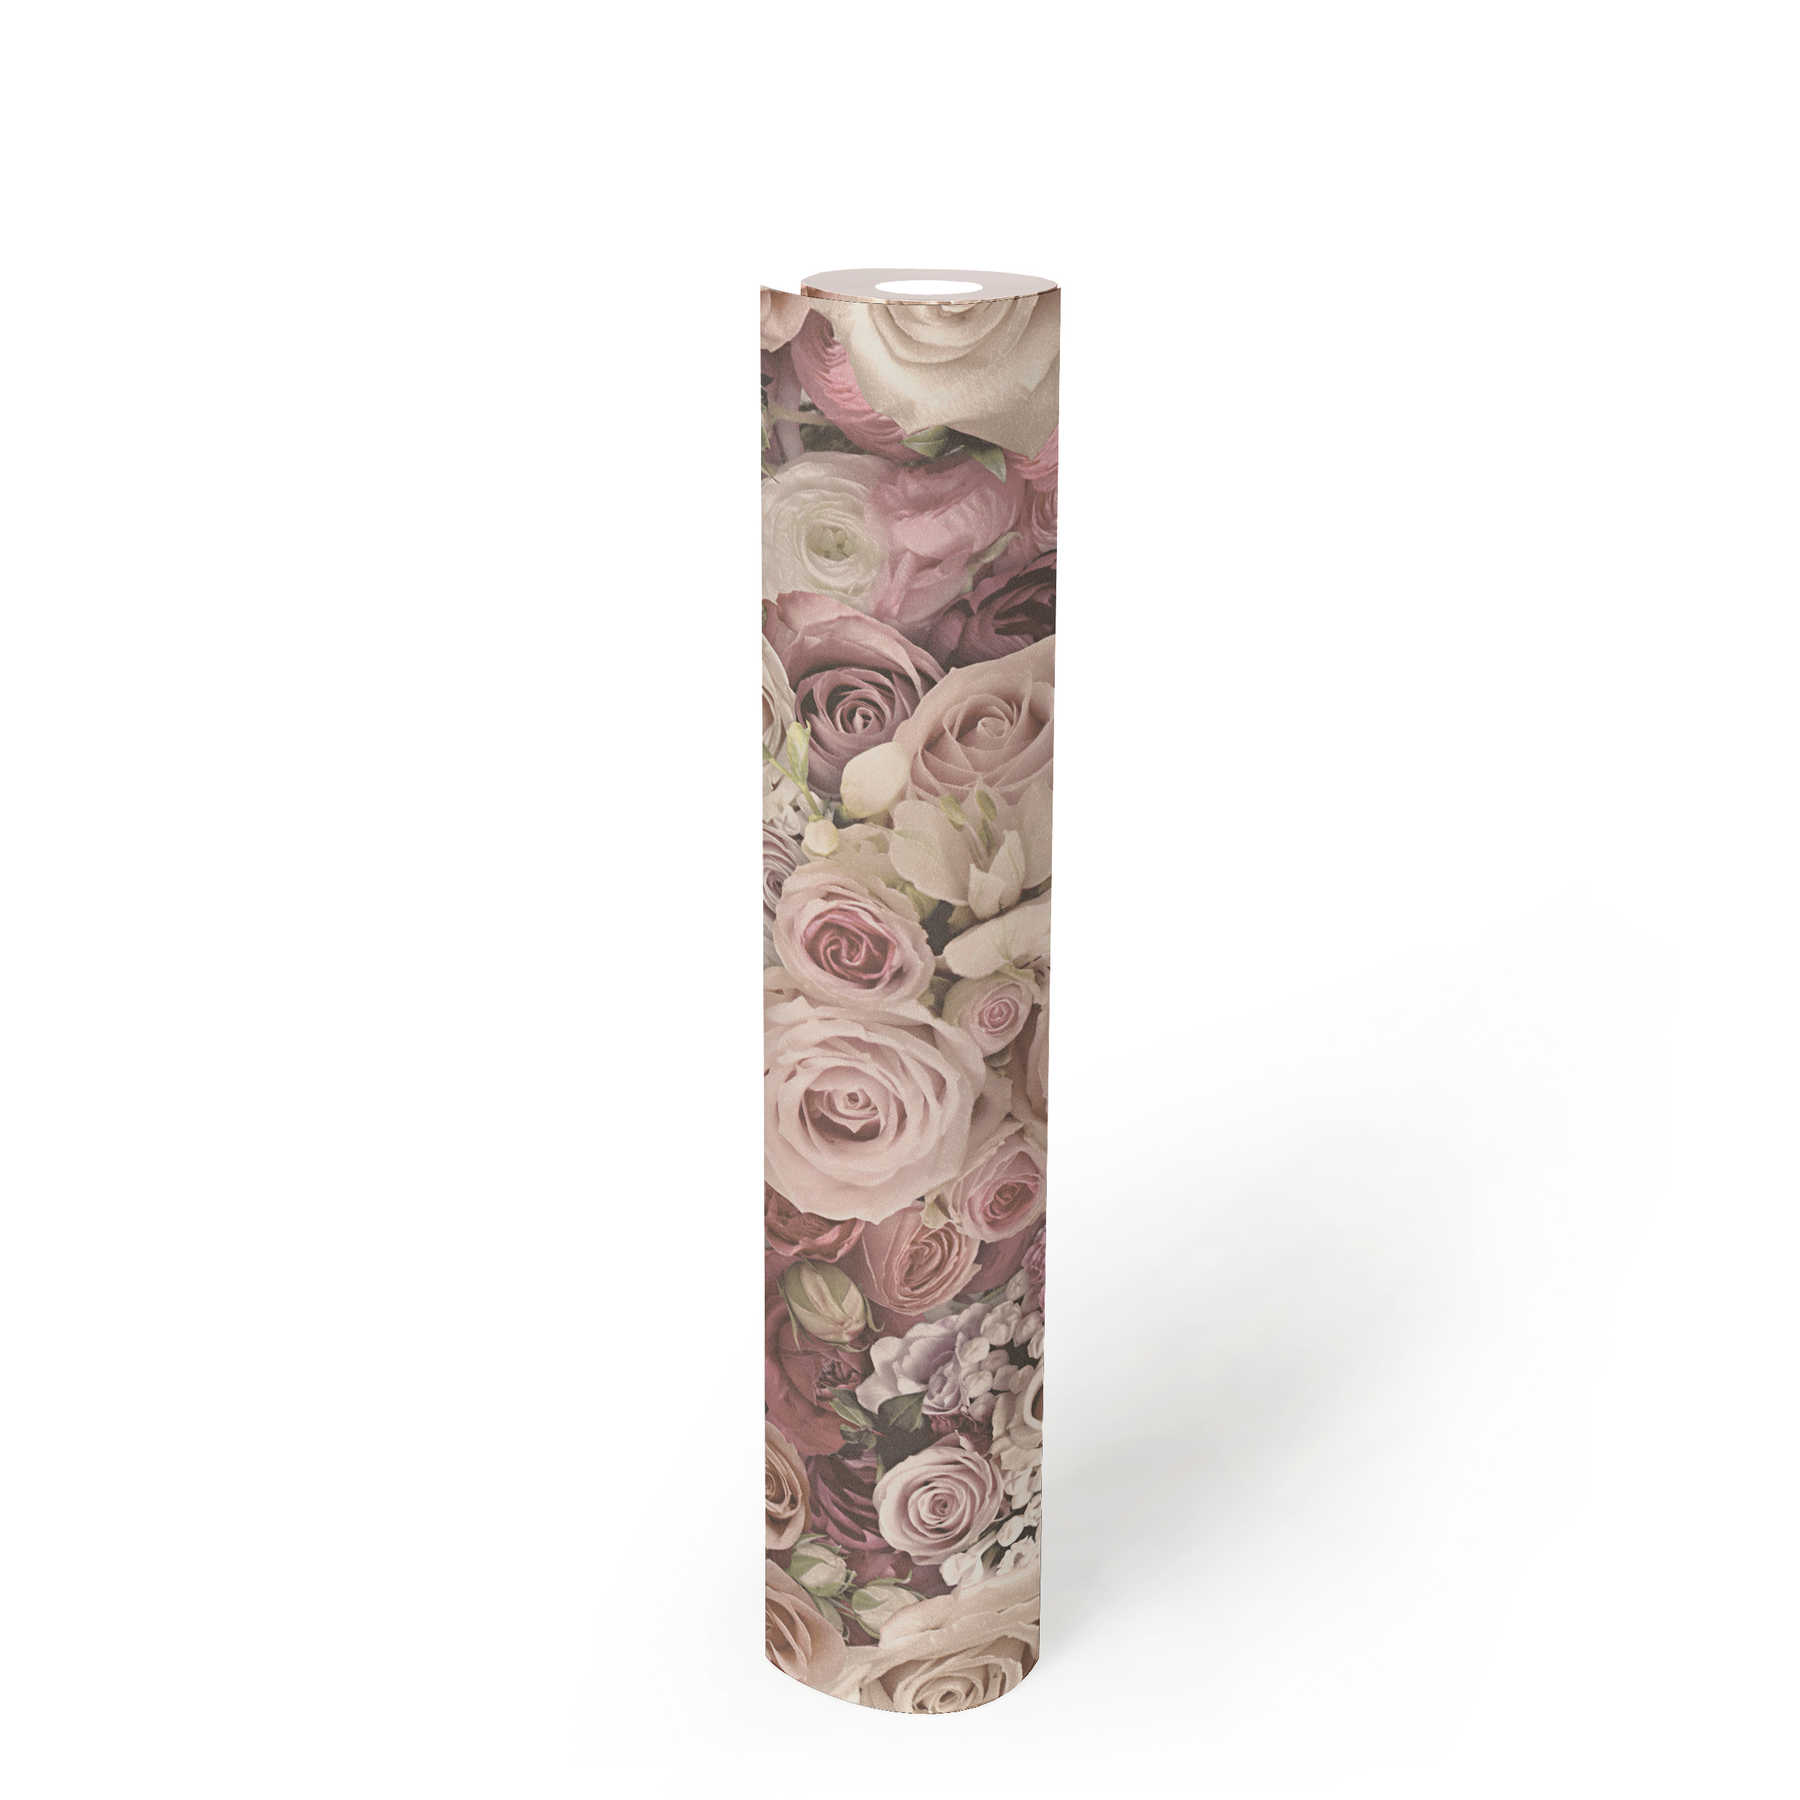             Papier peint Roses en rose pâle Mer de fleurs - Crème
        